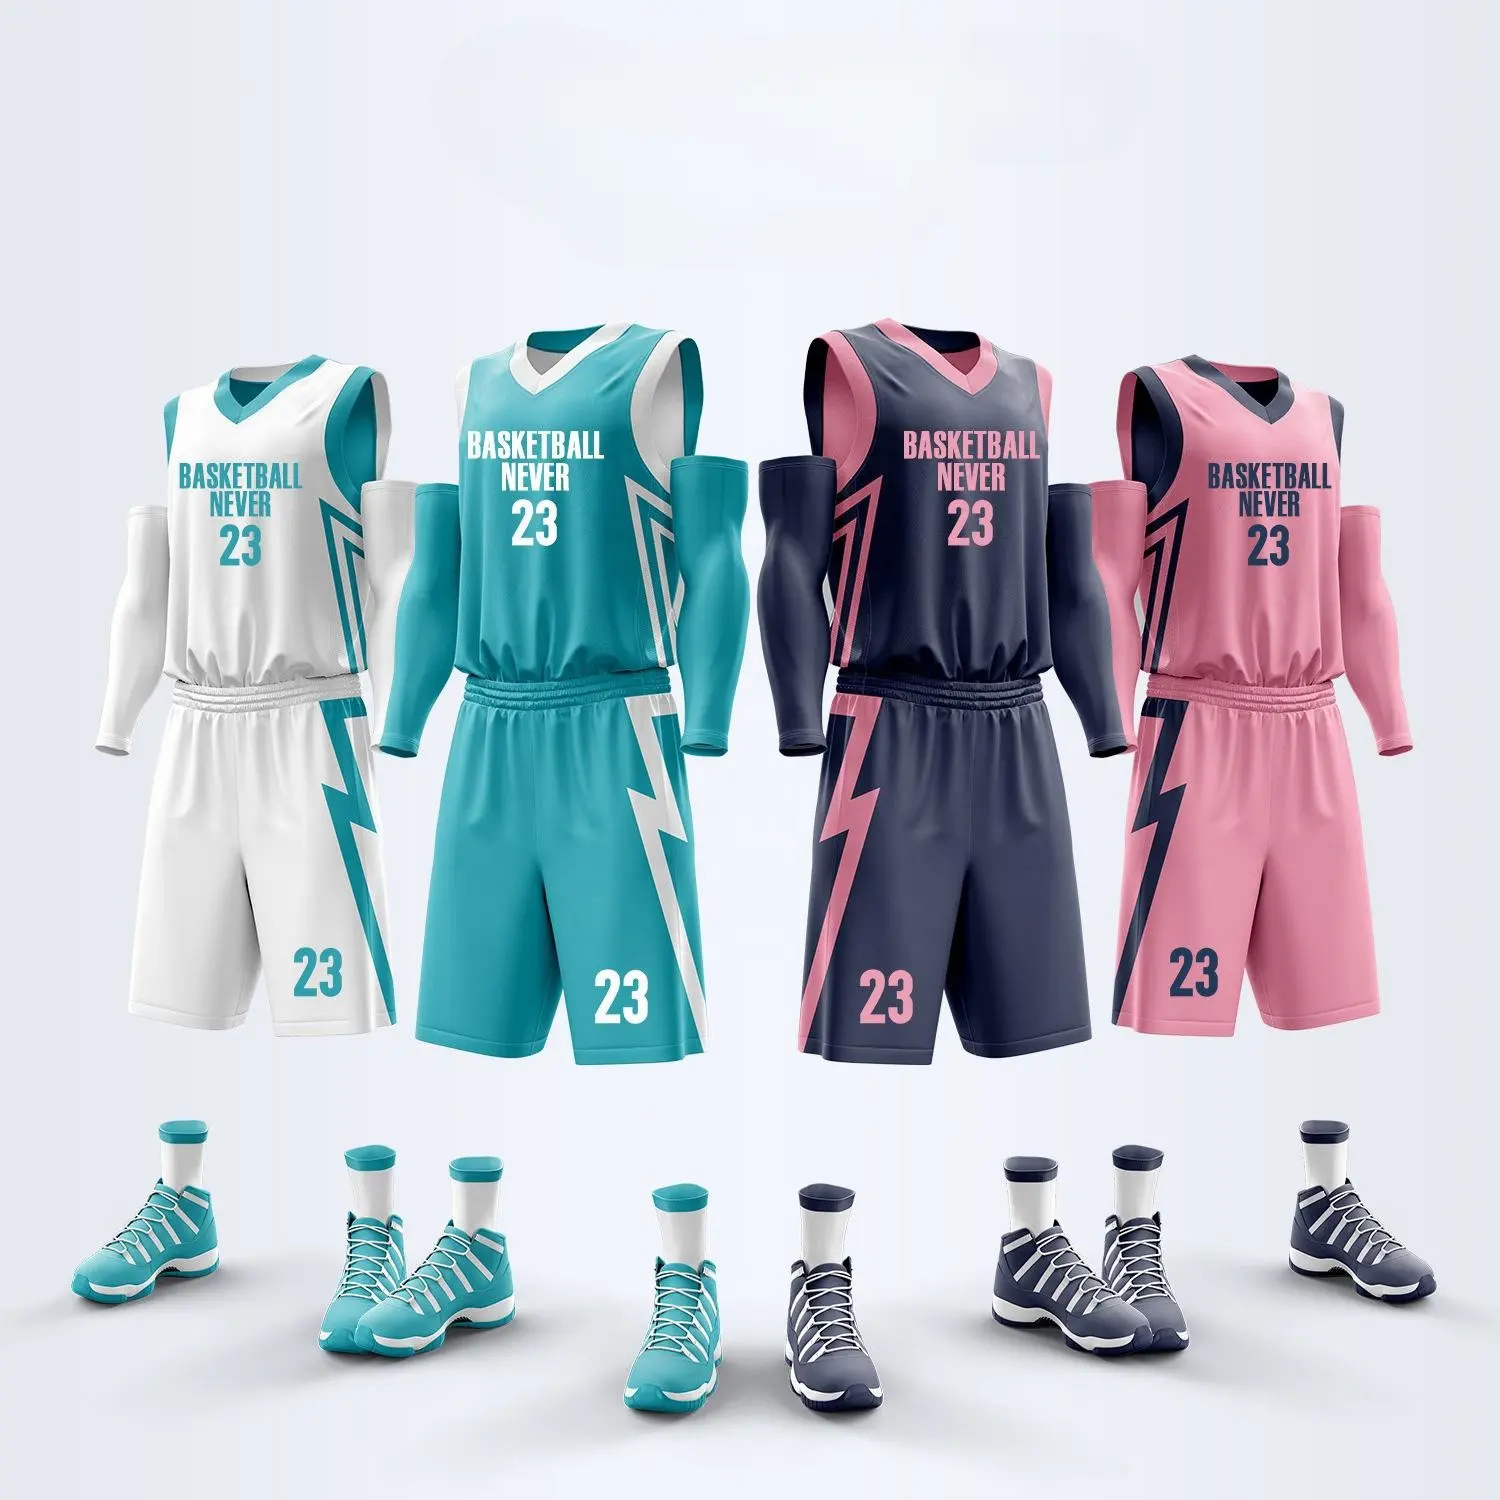 Набор баскетбольных трикотажных изделий с логотипом на заказ, баскетбольная форма, двусторонние баскетбольные майки и шорты